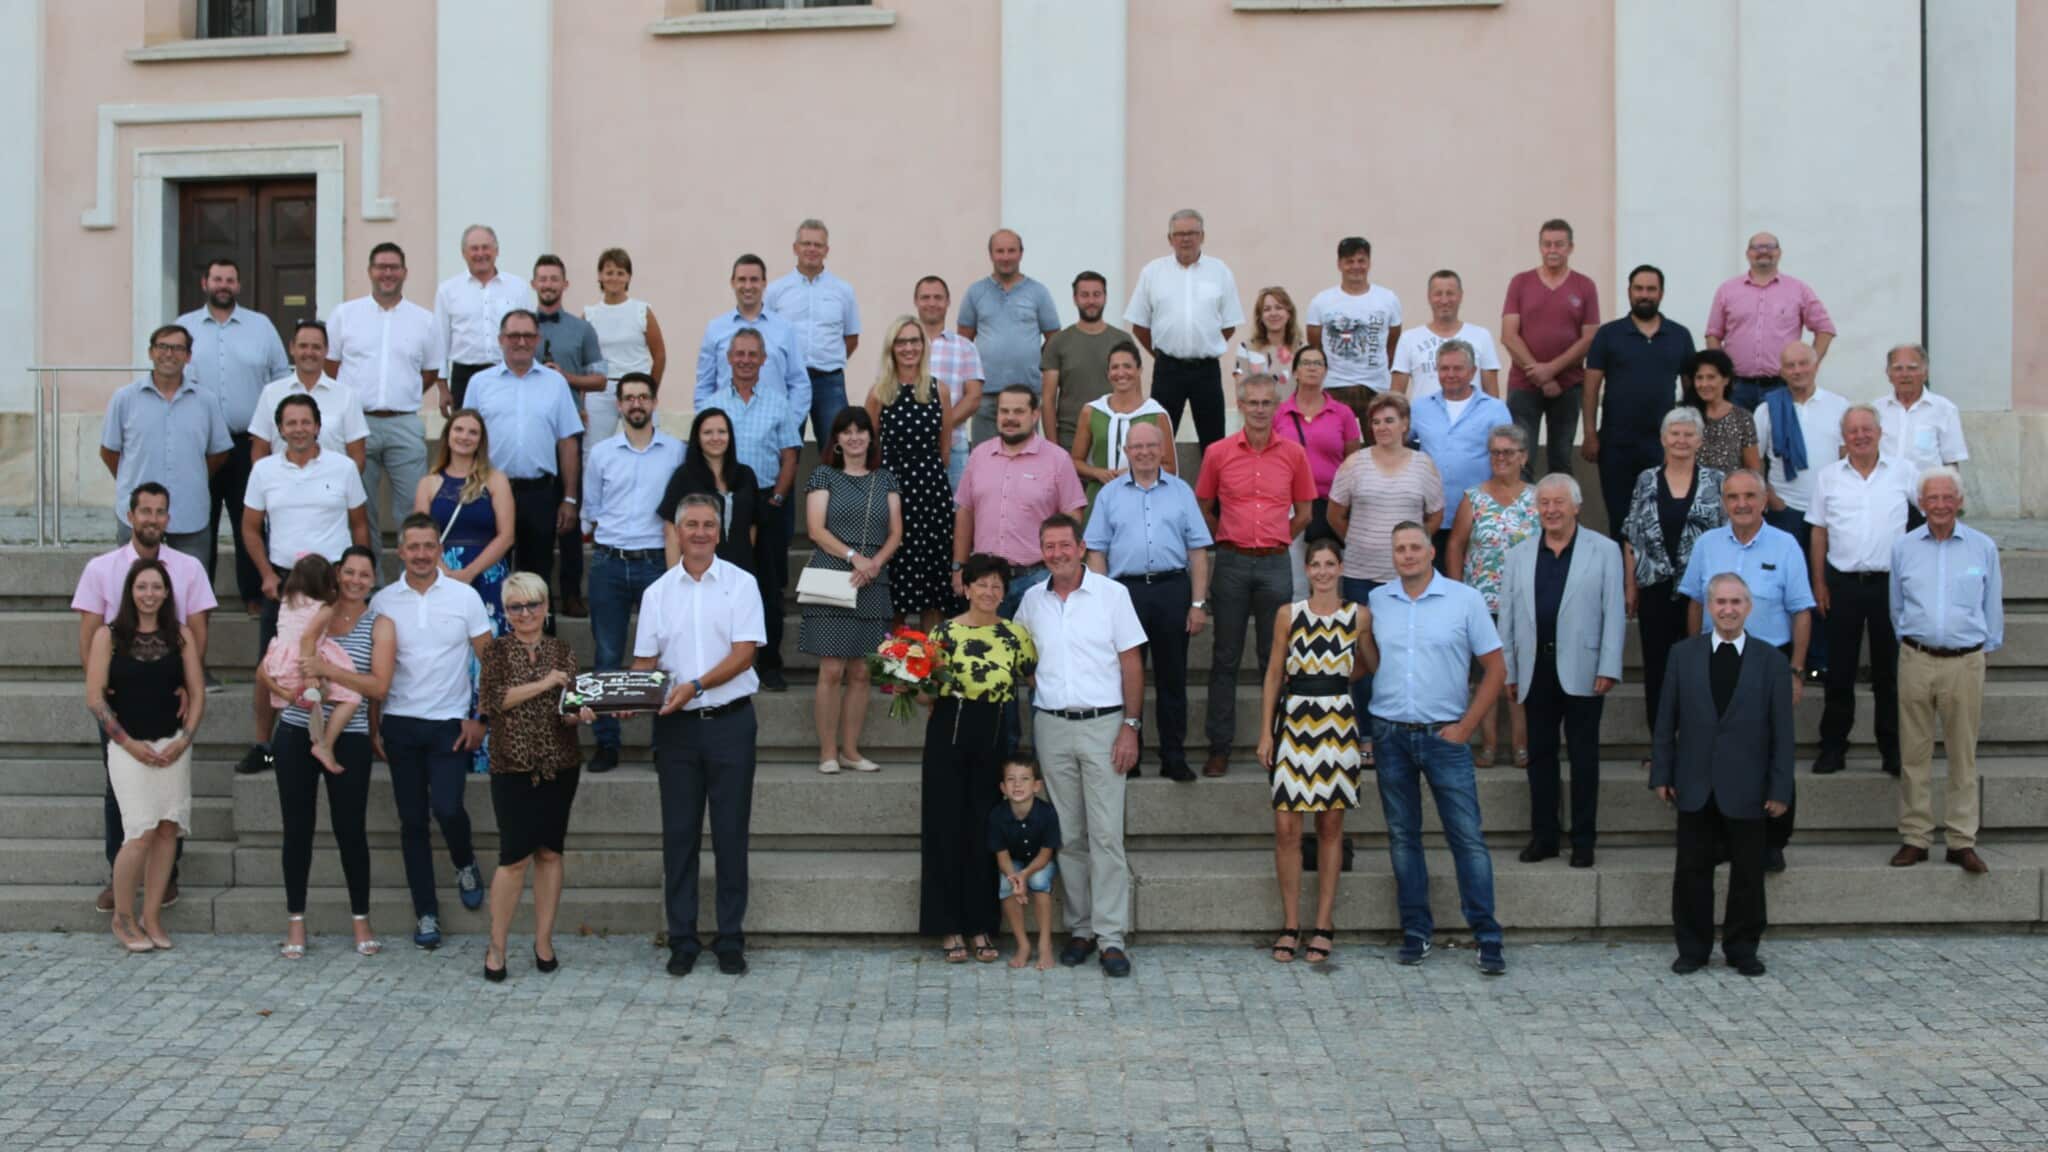 Zum 25. Dienstjubiläum gratulierten die Mitglieder des Gemeinderates sowie die Mitarbeiterinnen und Mitarbeiter der Gemeinde dem Griffener Bürgermeister Josef Müller.